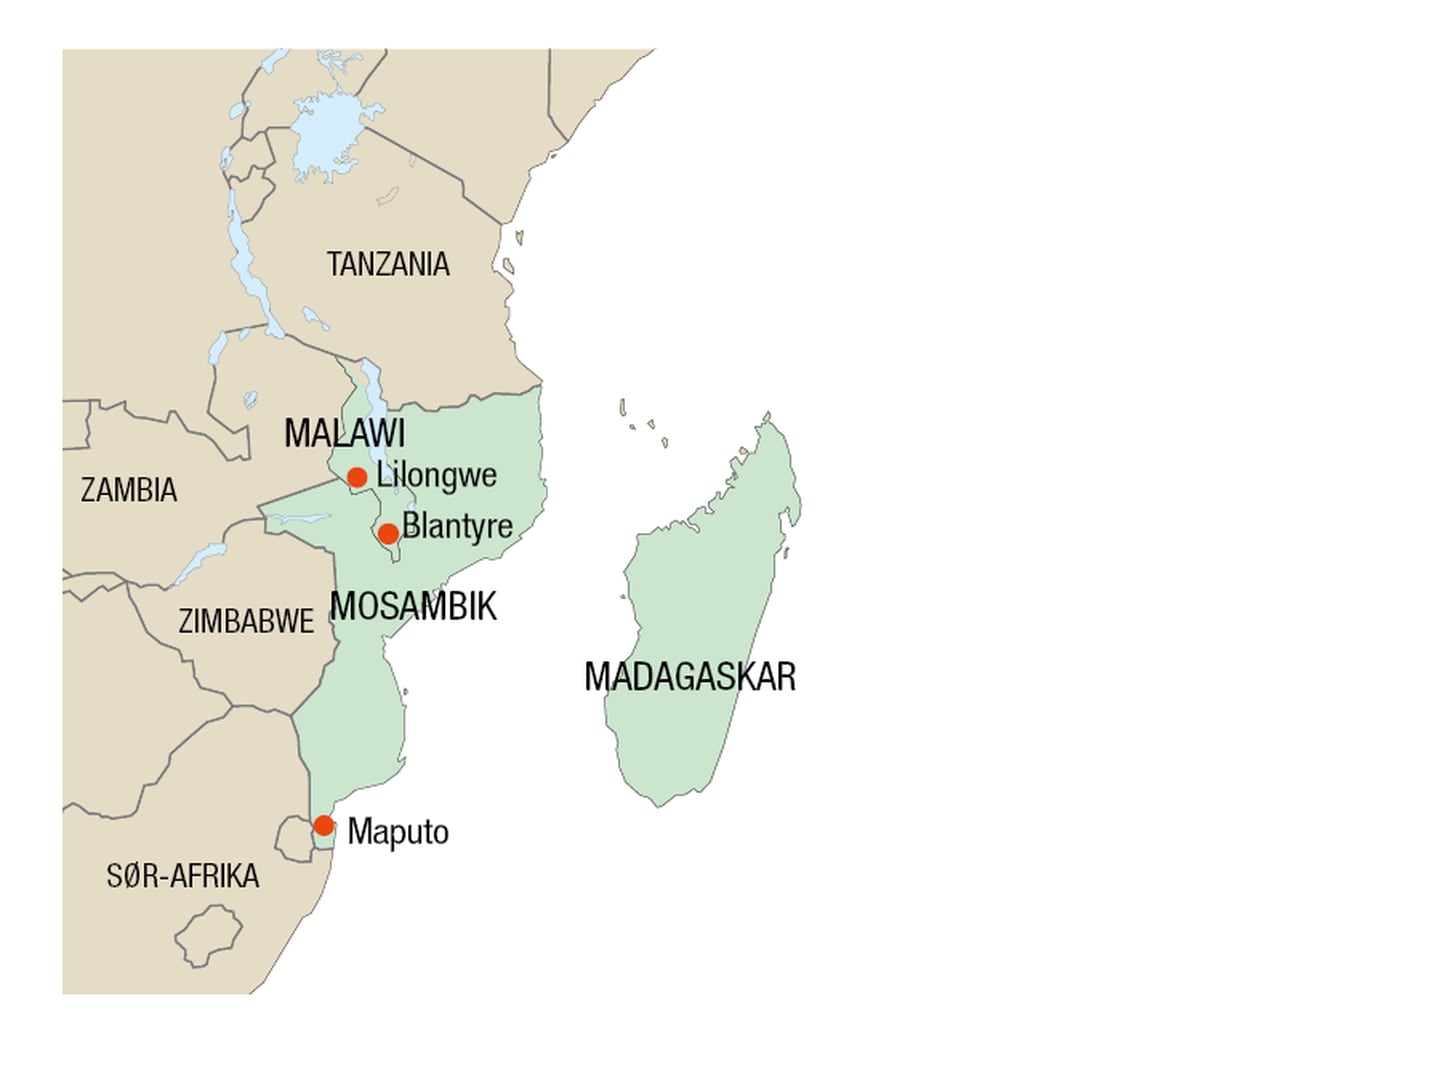 Særlig Madagaskar, Mosambik og Malawi ble hardt rammet av syklonen Freddy.